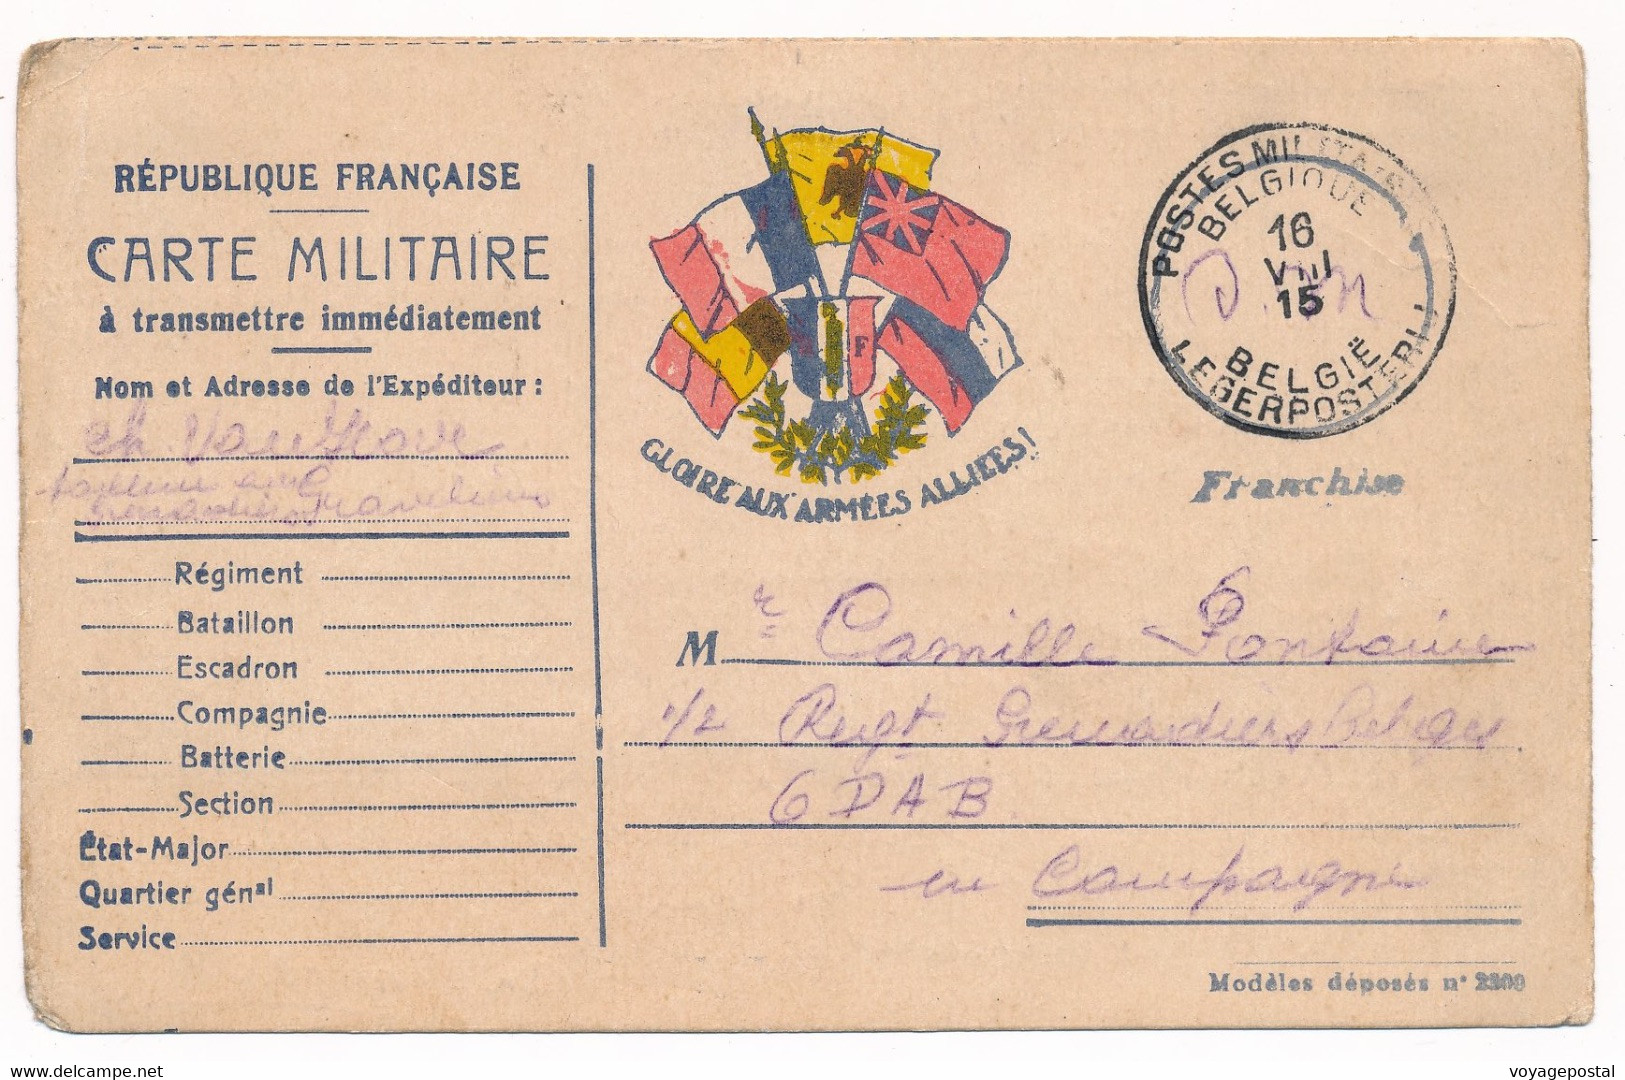 CARTE DRAPEAUX GRAVELINES PMB MILITAIRE A 13 ARMÉE BELGE WWI BELGIQUE - Belgisch Leger